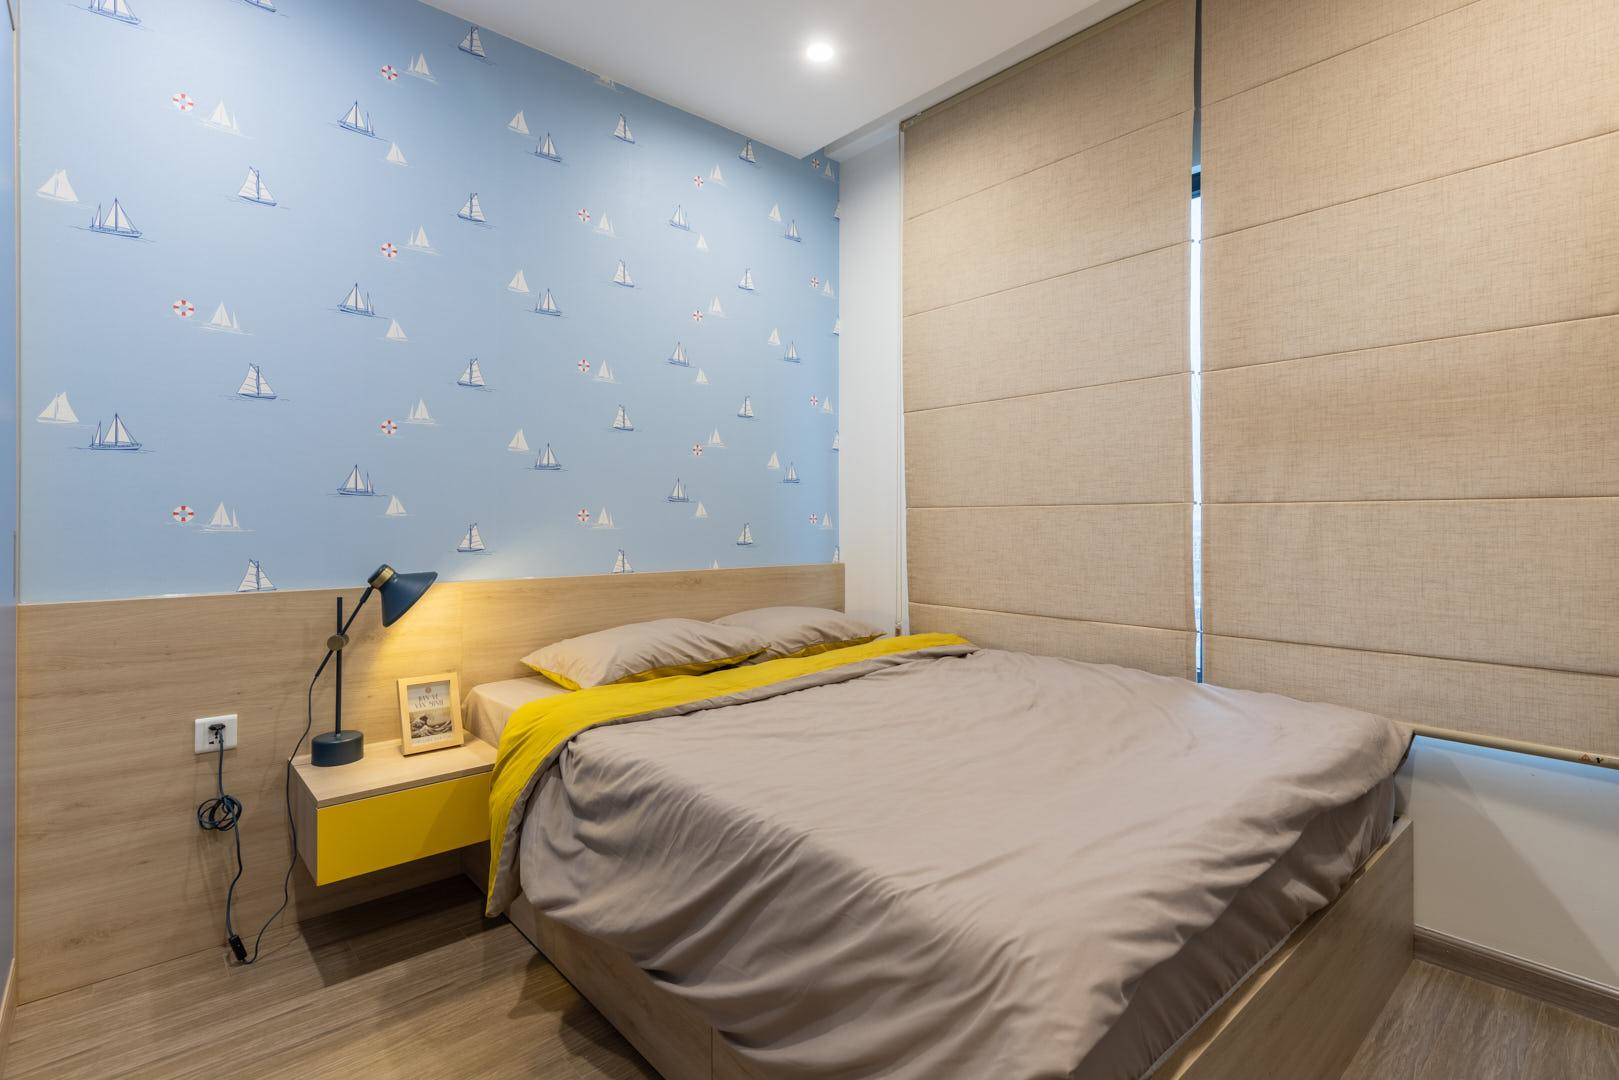 Phòng ngủ số 3 được thiết kế theo gam màu yêu thích của các bé